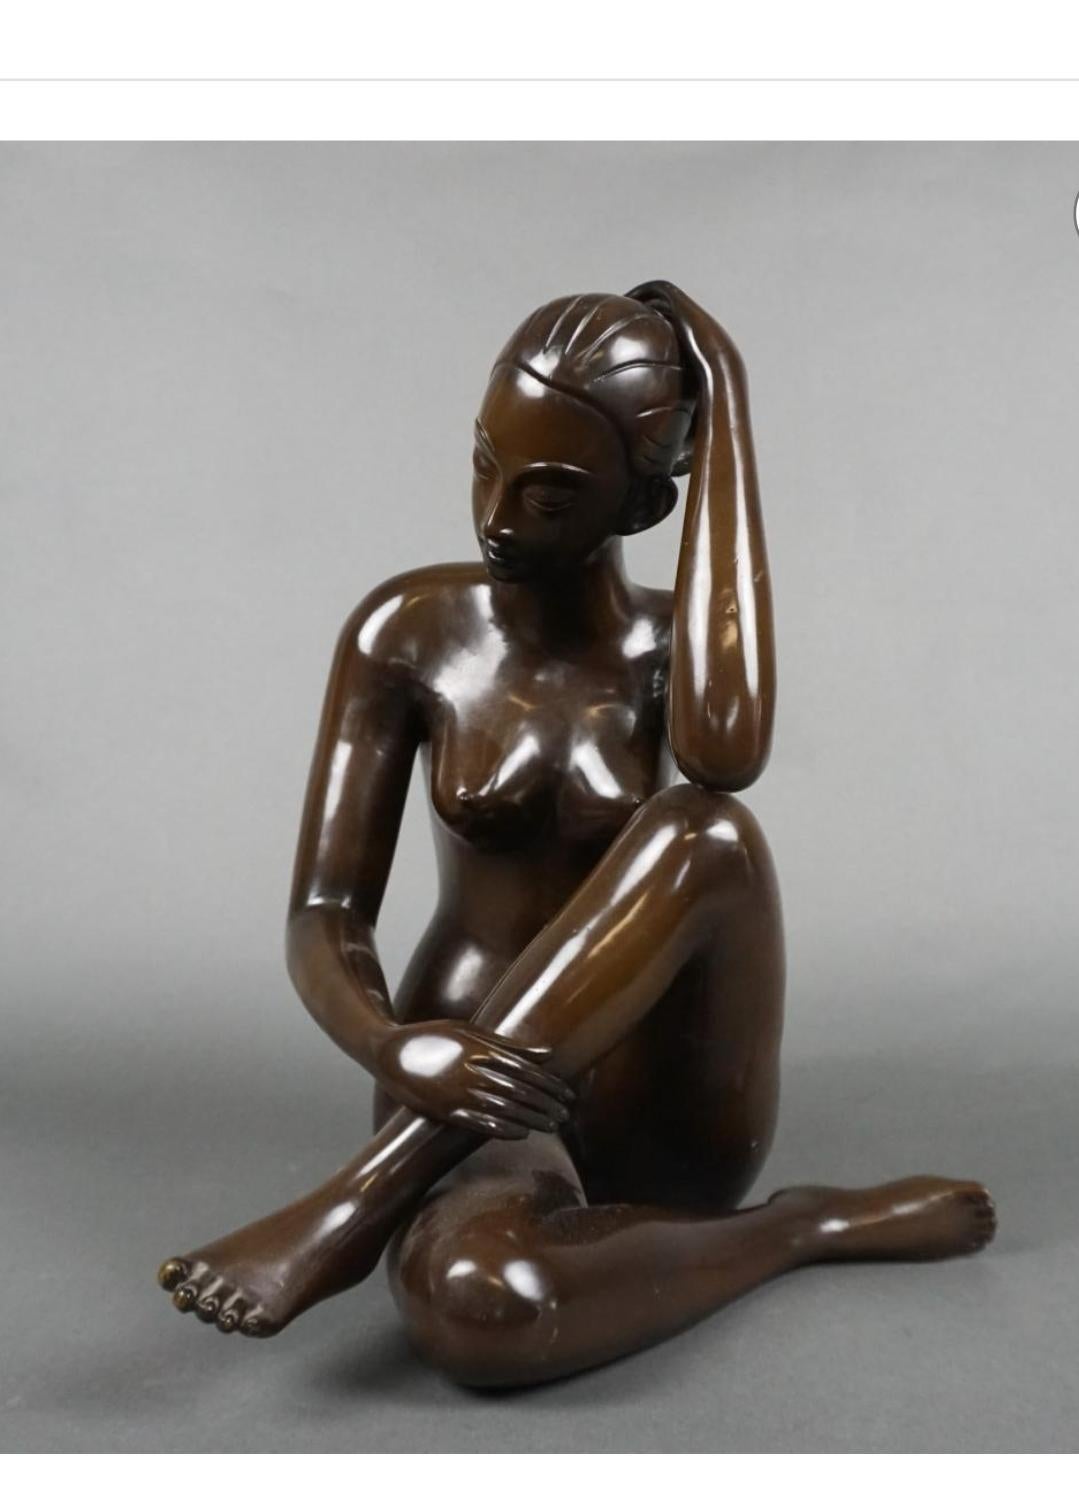  Grande sculpture en bronze patiné du 20e siècle représentant une femme nue assise.
Excellente qualité. Mesure 12